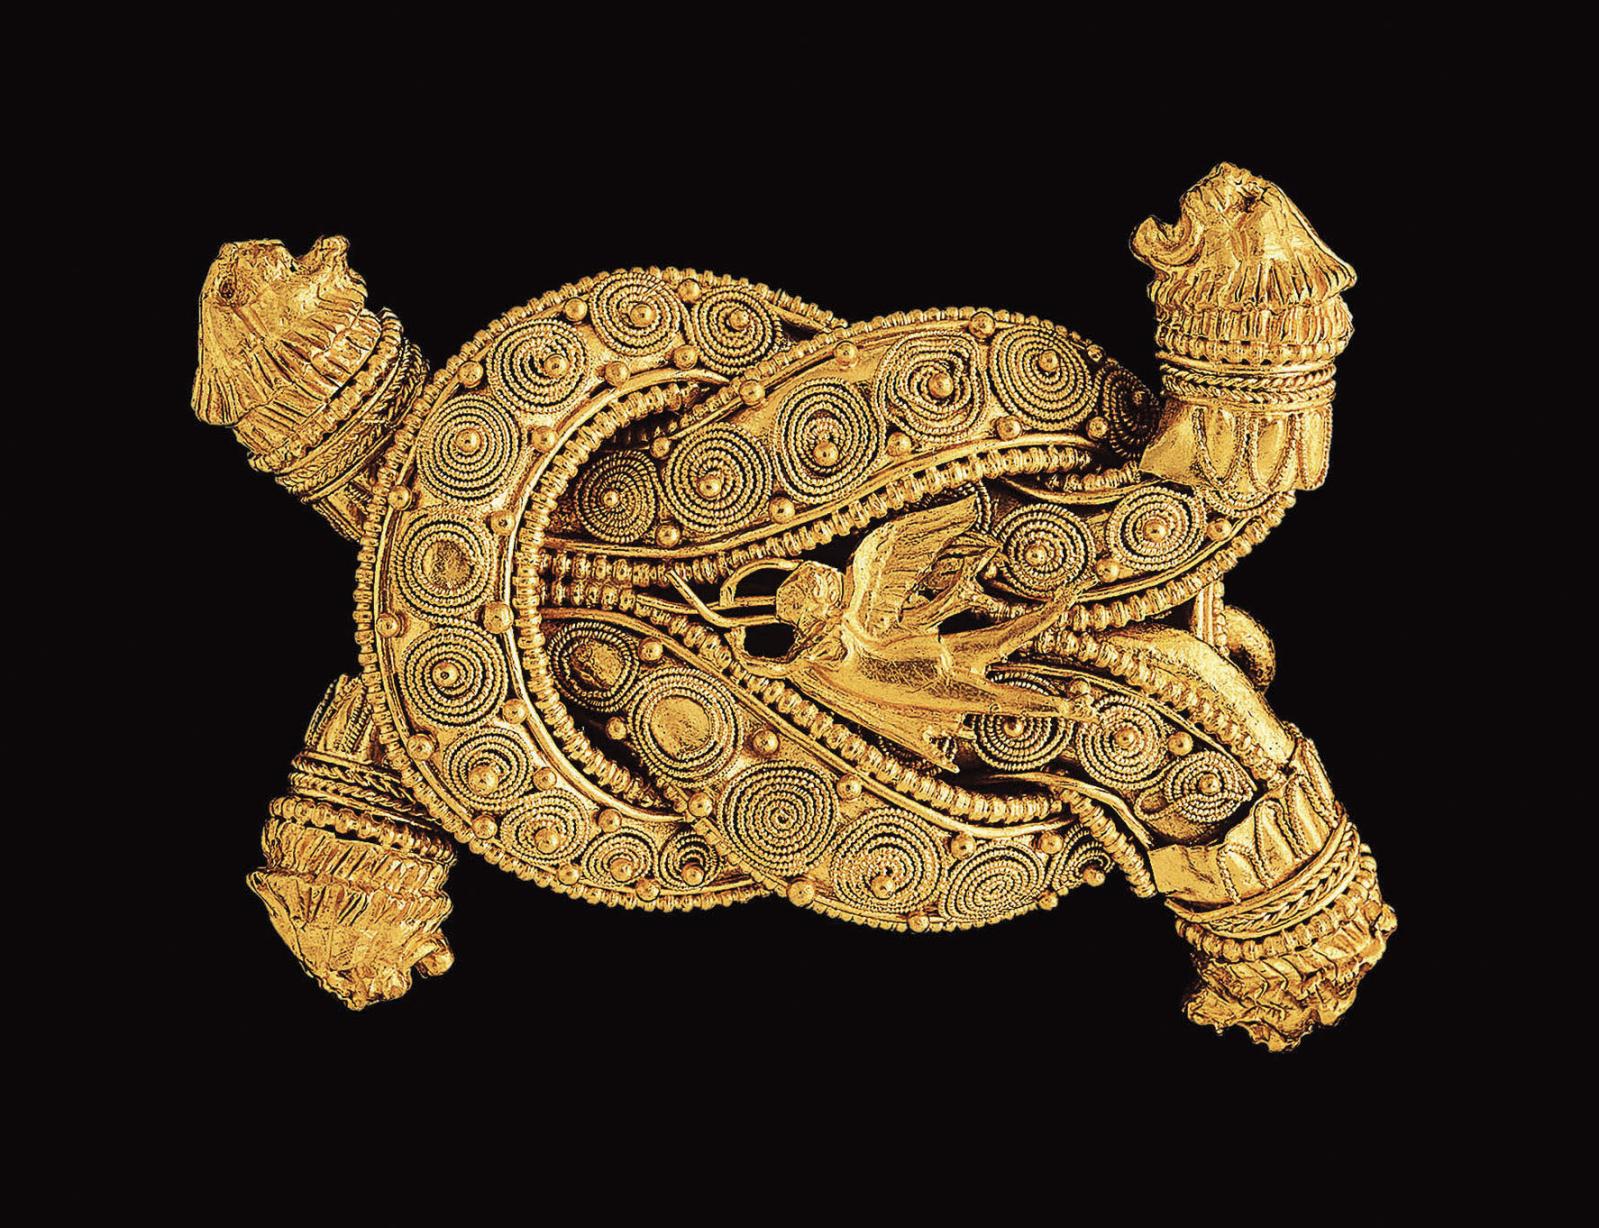 Broche en or, Grèce, période hellénistique, vers 300 av. J.-C. Photo Prudence Cuming Ltd. The Al Thani Collection. Tous droits réservés